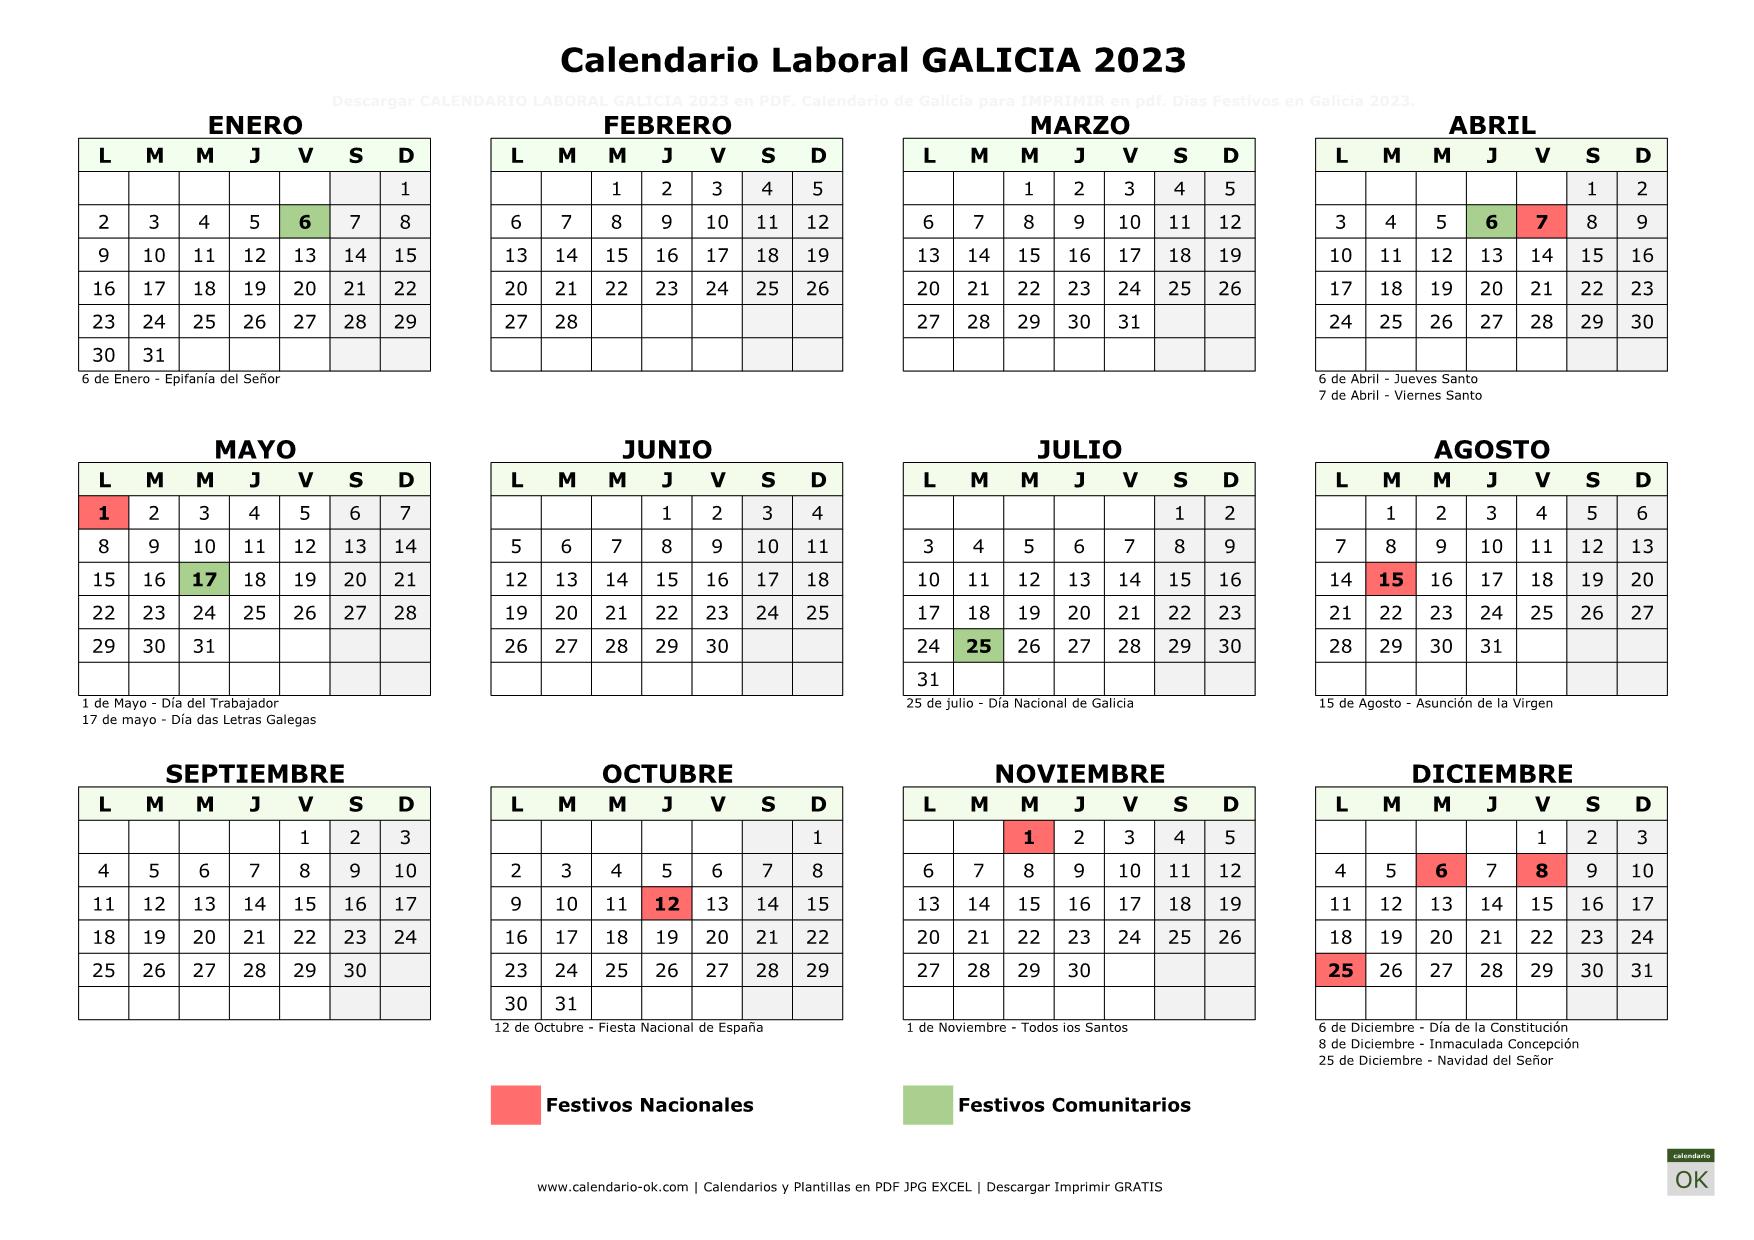 Calendario Laboral GALICIA 2023 horizontal